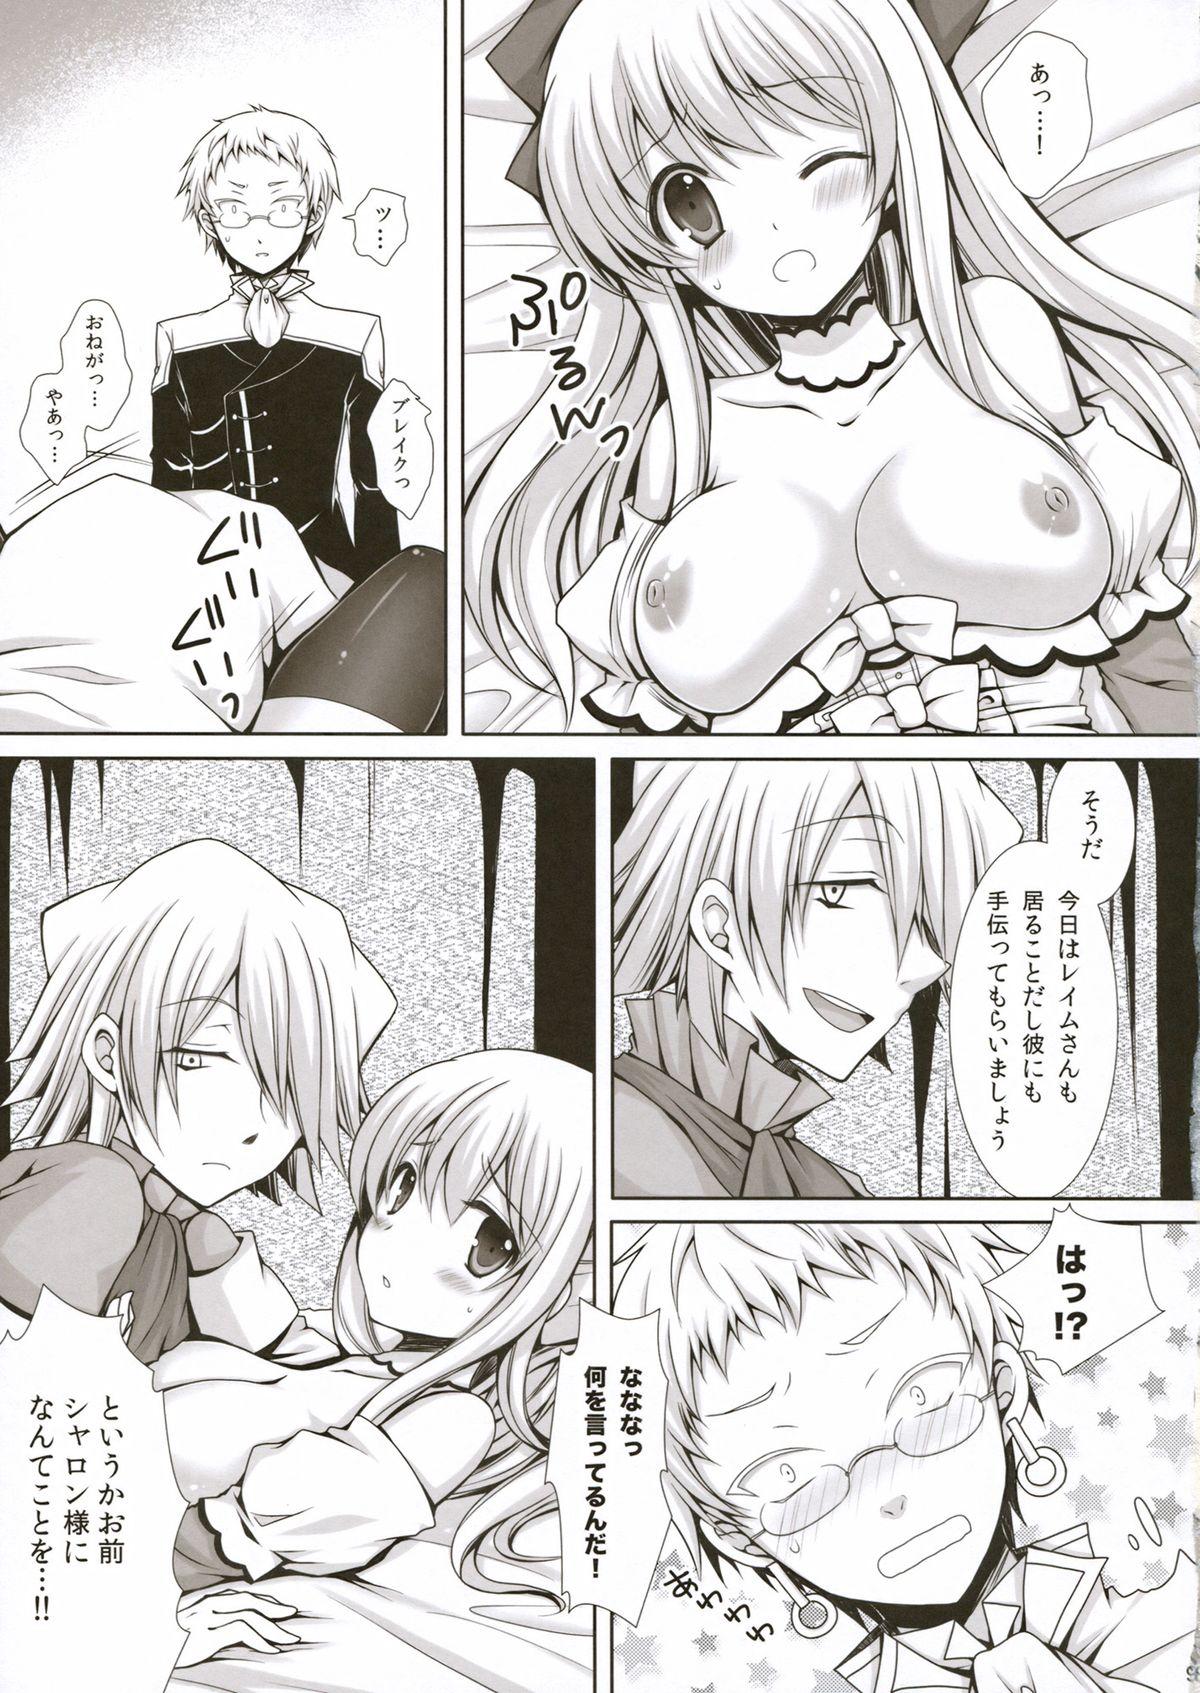 Desperate Saa, Oshioki no Jikan desu. - Pandora hearts Blacks - Page 9